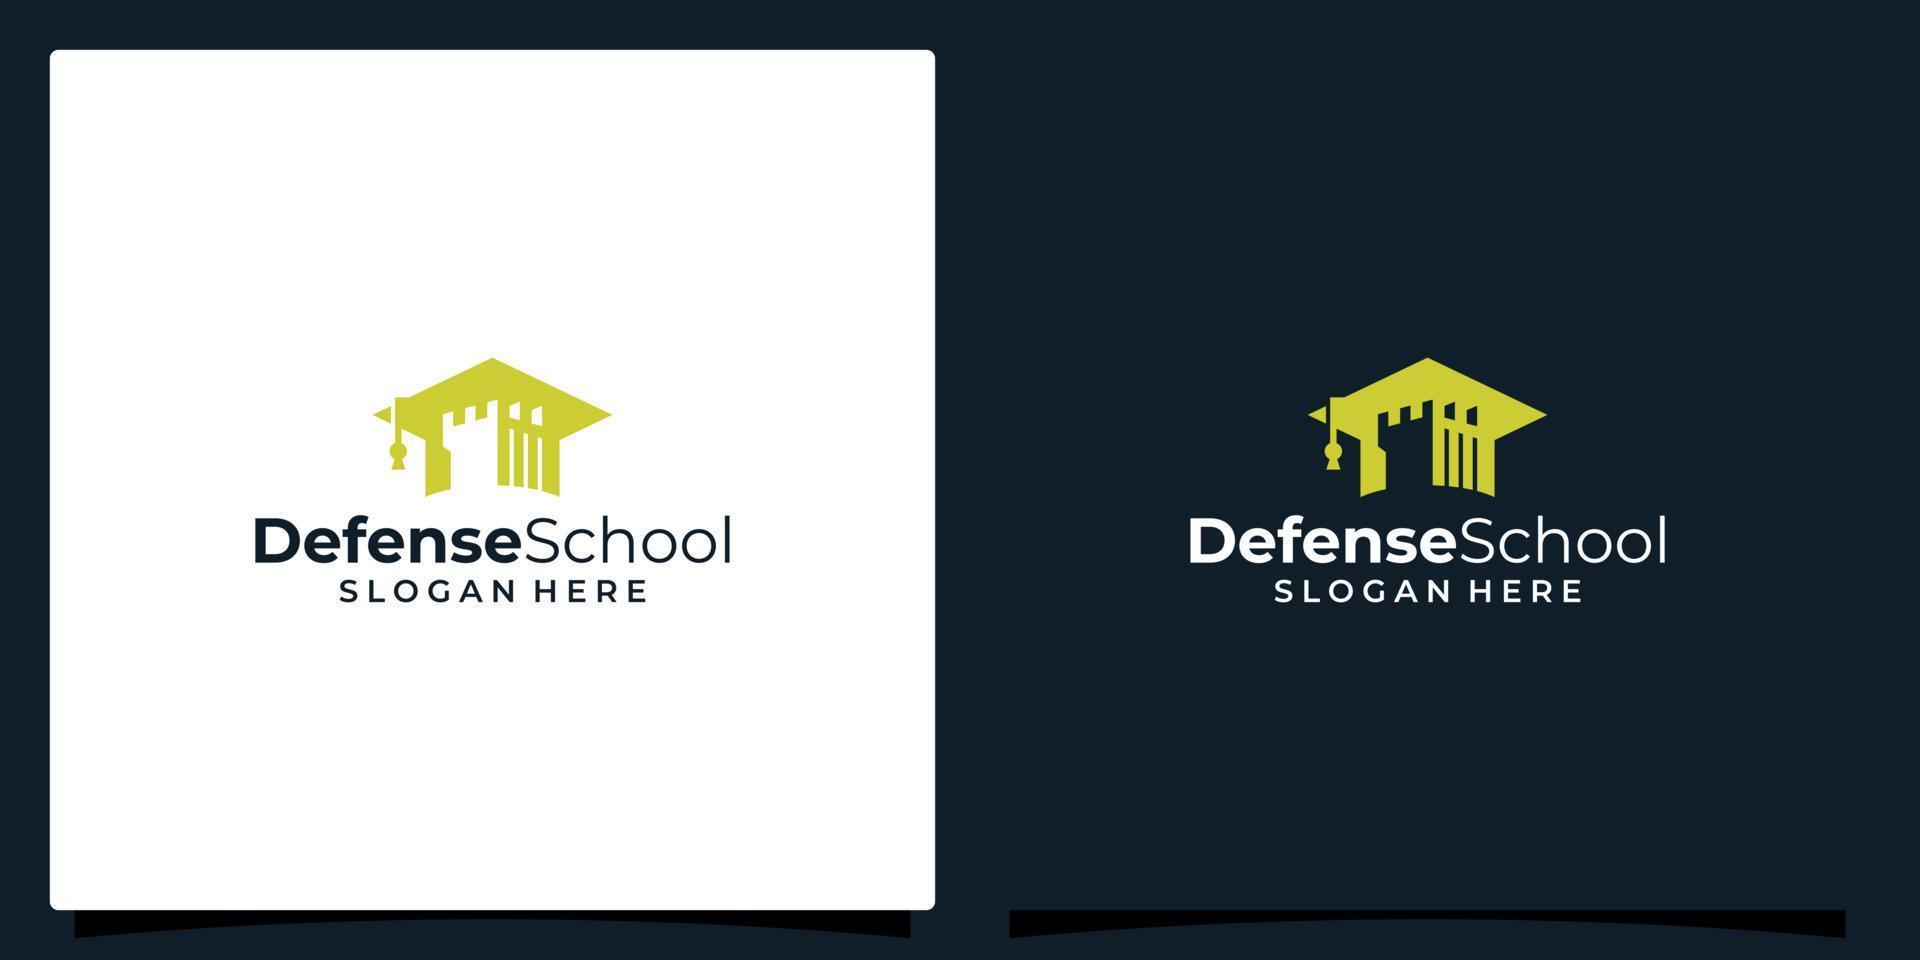 Hochschule, Abschluss Deckel, Campus, Bildung Logo Design und stark Turm Verteidigung Schloss Illustration Vektor Design.